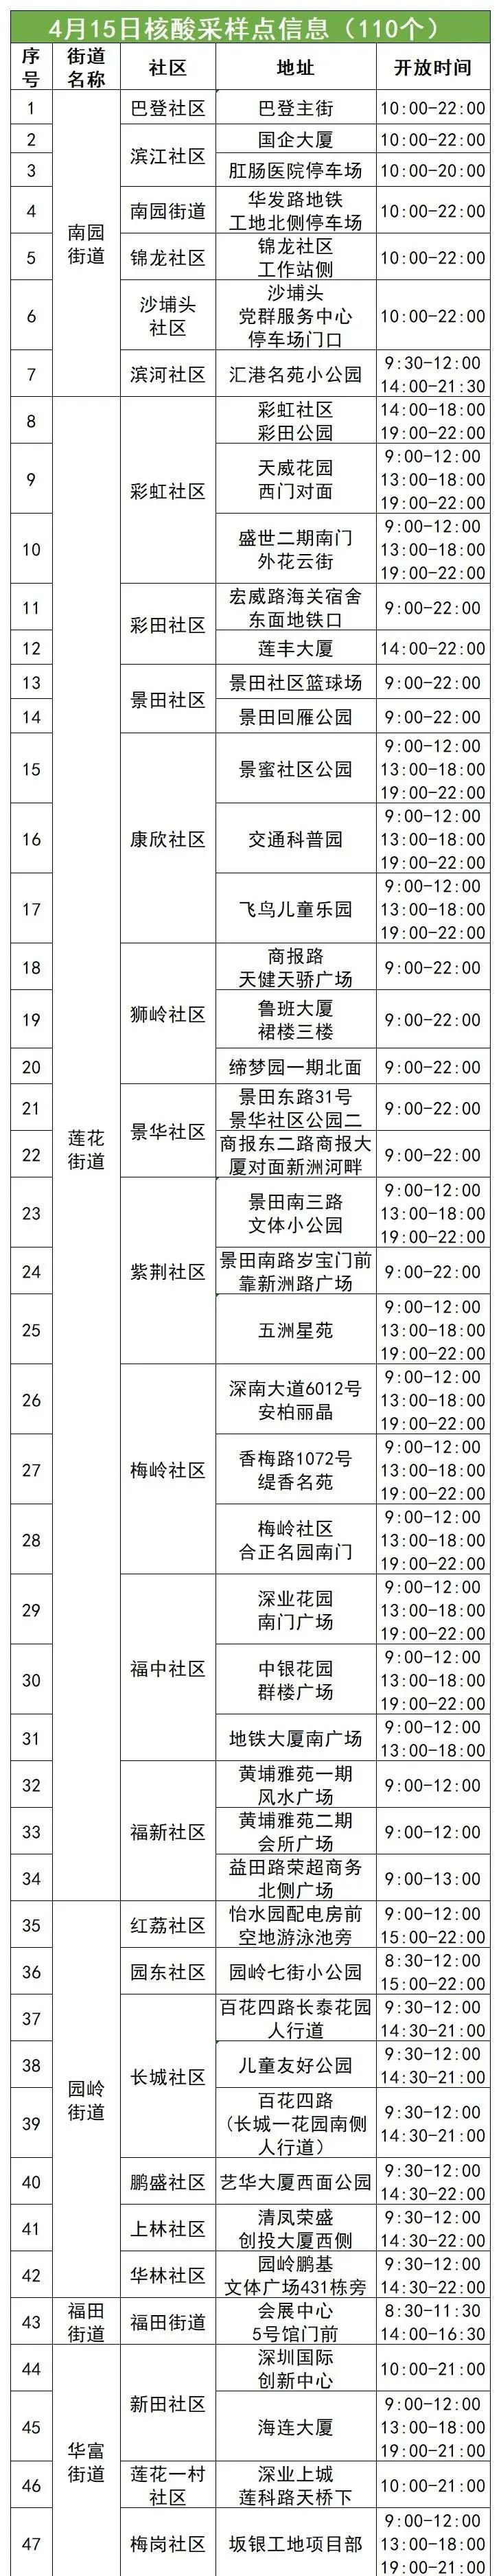 福田区4月15日110个核酸采样点名单